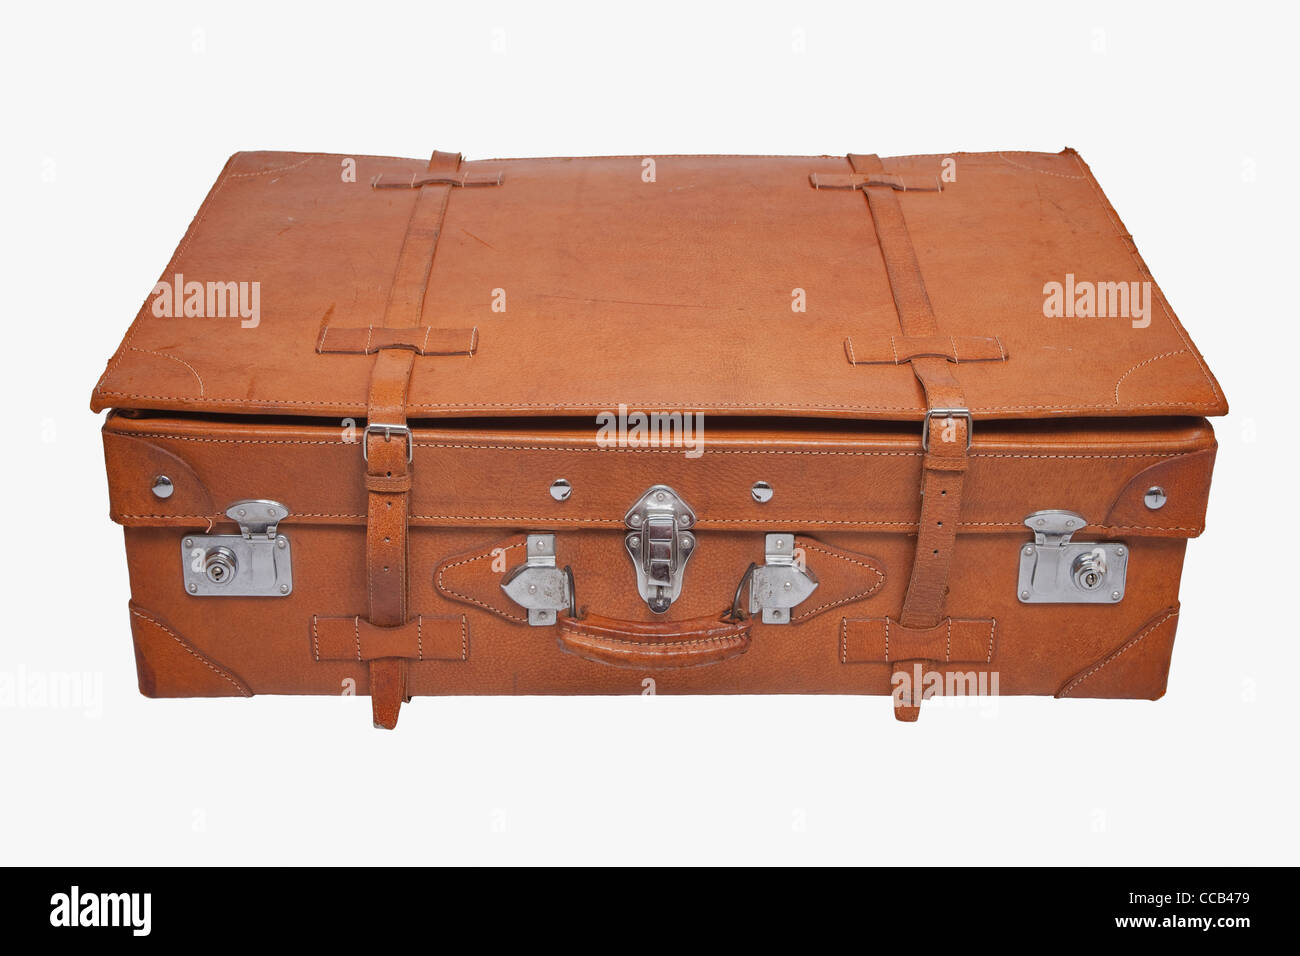 Detailansicht eines alten braunen Lederkoffers | photo de détail une vieille valise en cuir marron Banque D'Images